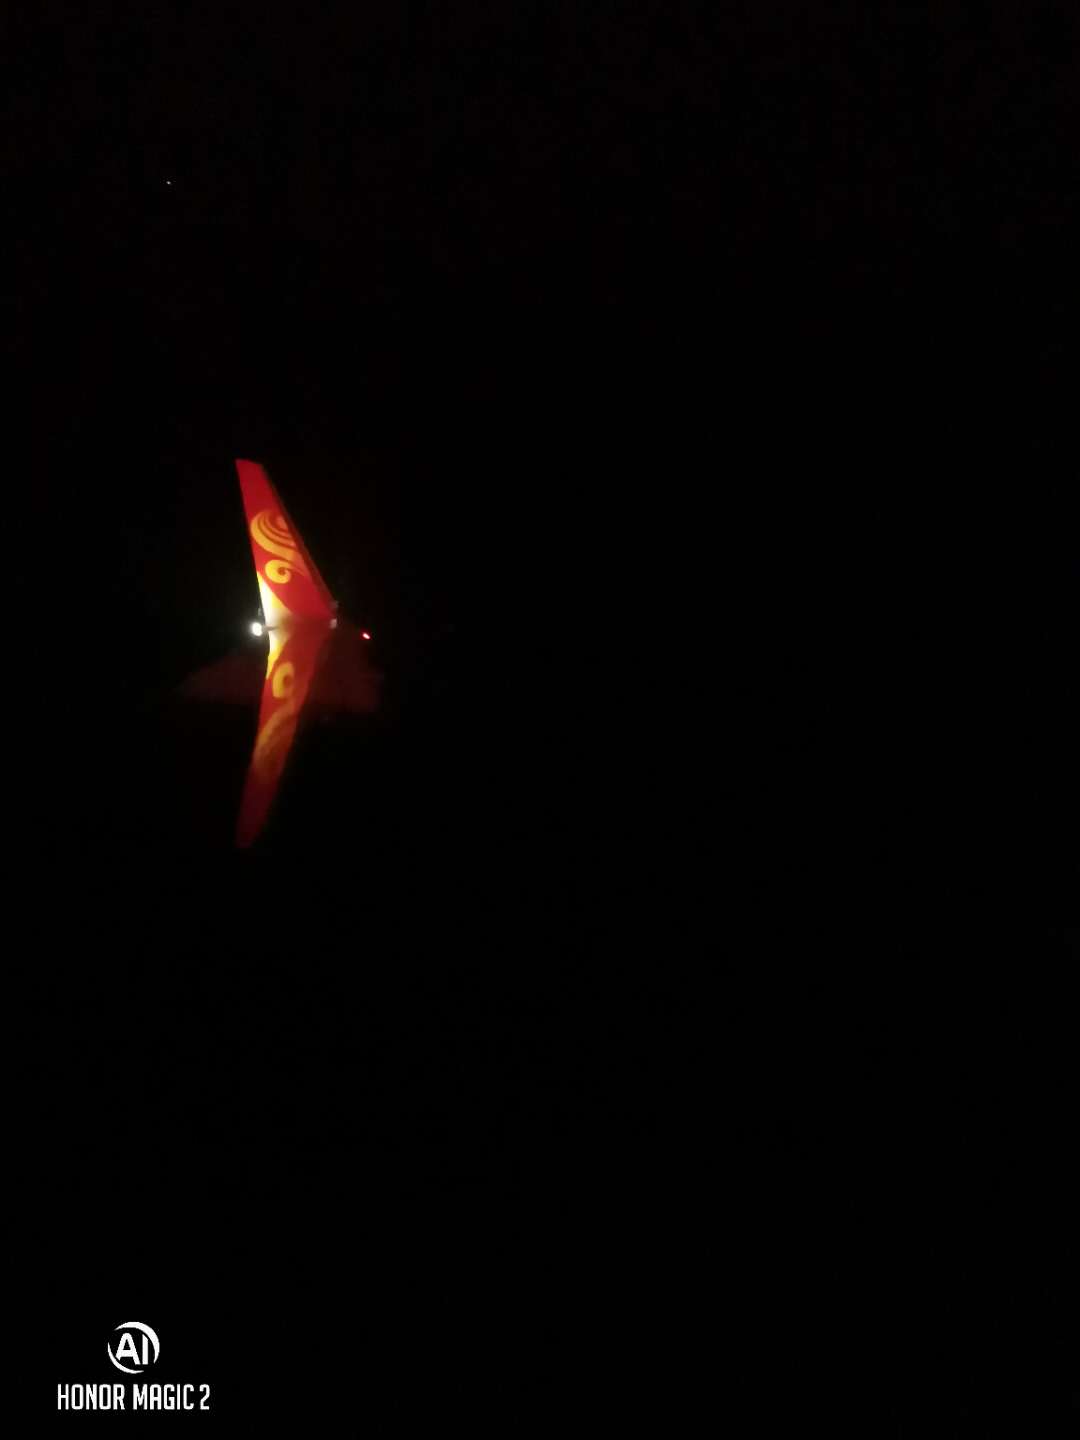 追寻旅行的意义-晚上回来的时候拍摄的机翼那闪烁的灯光